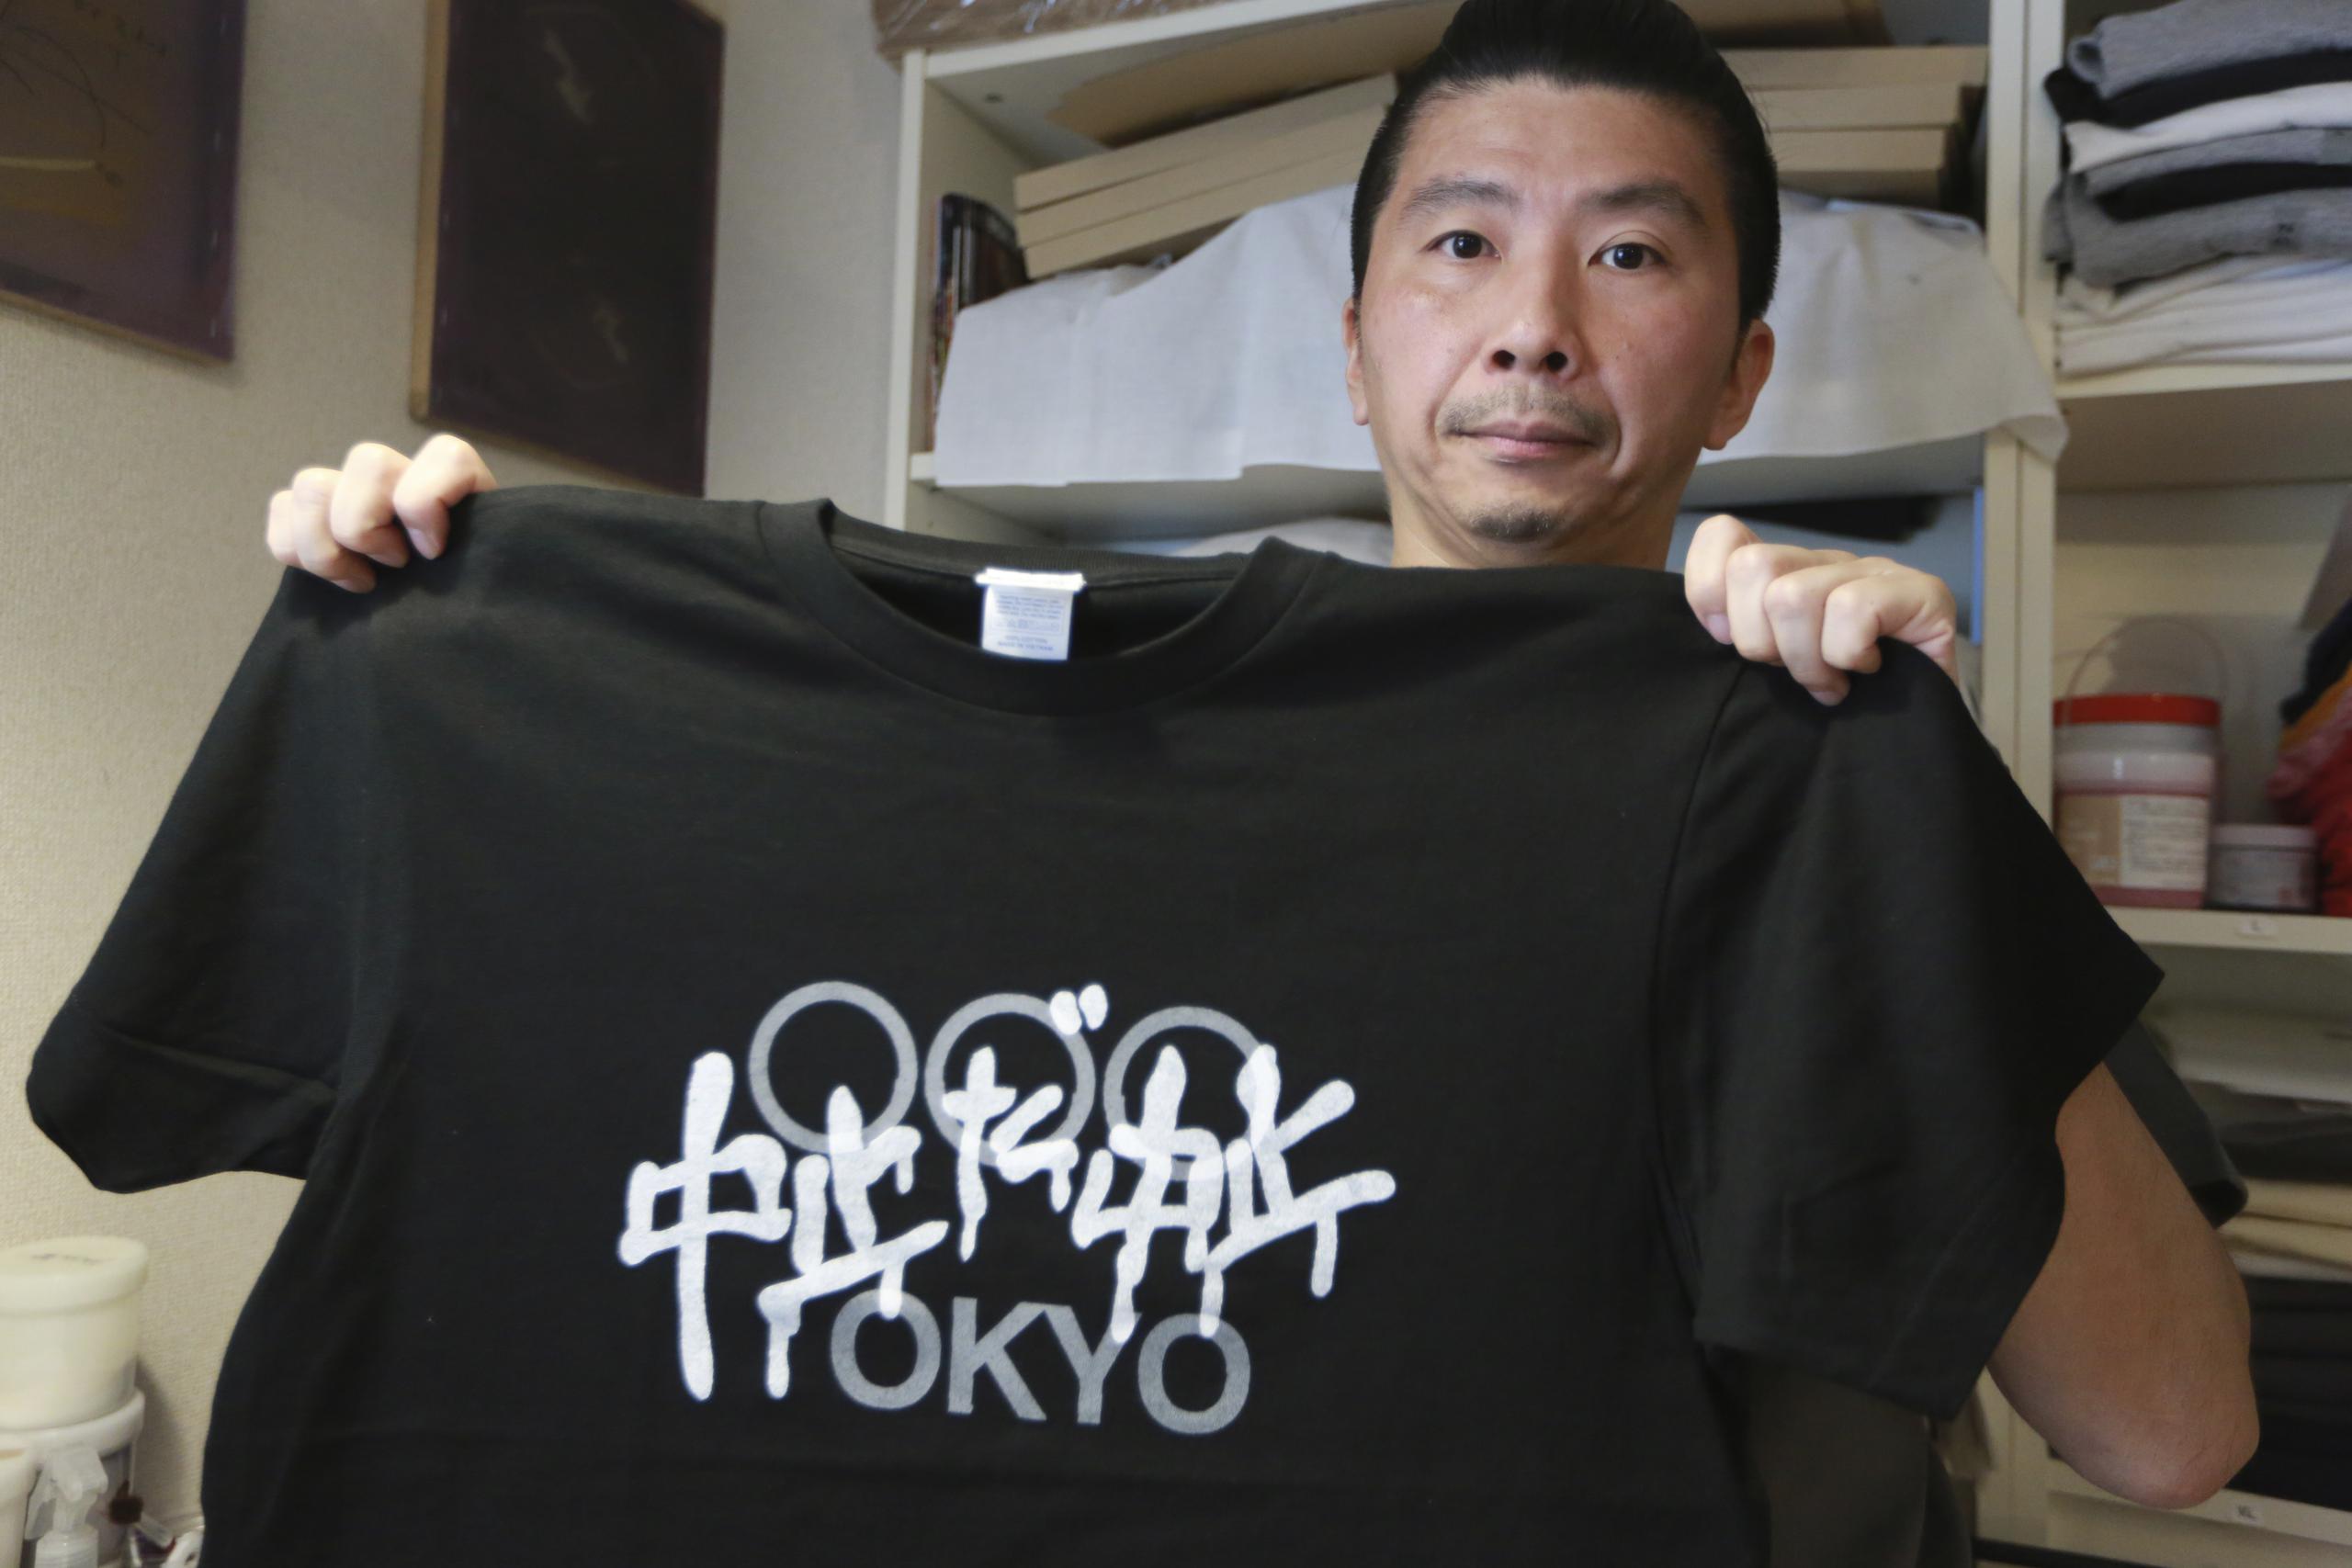 El diseñador Susumu Kikutake, quien muestra una camiseta antiolímpica, dijo que la demanda por estas piezas se ha multiplicado.